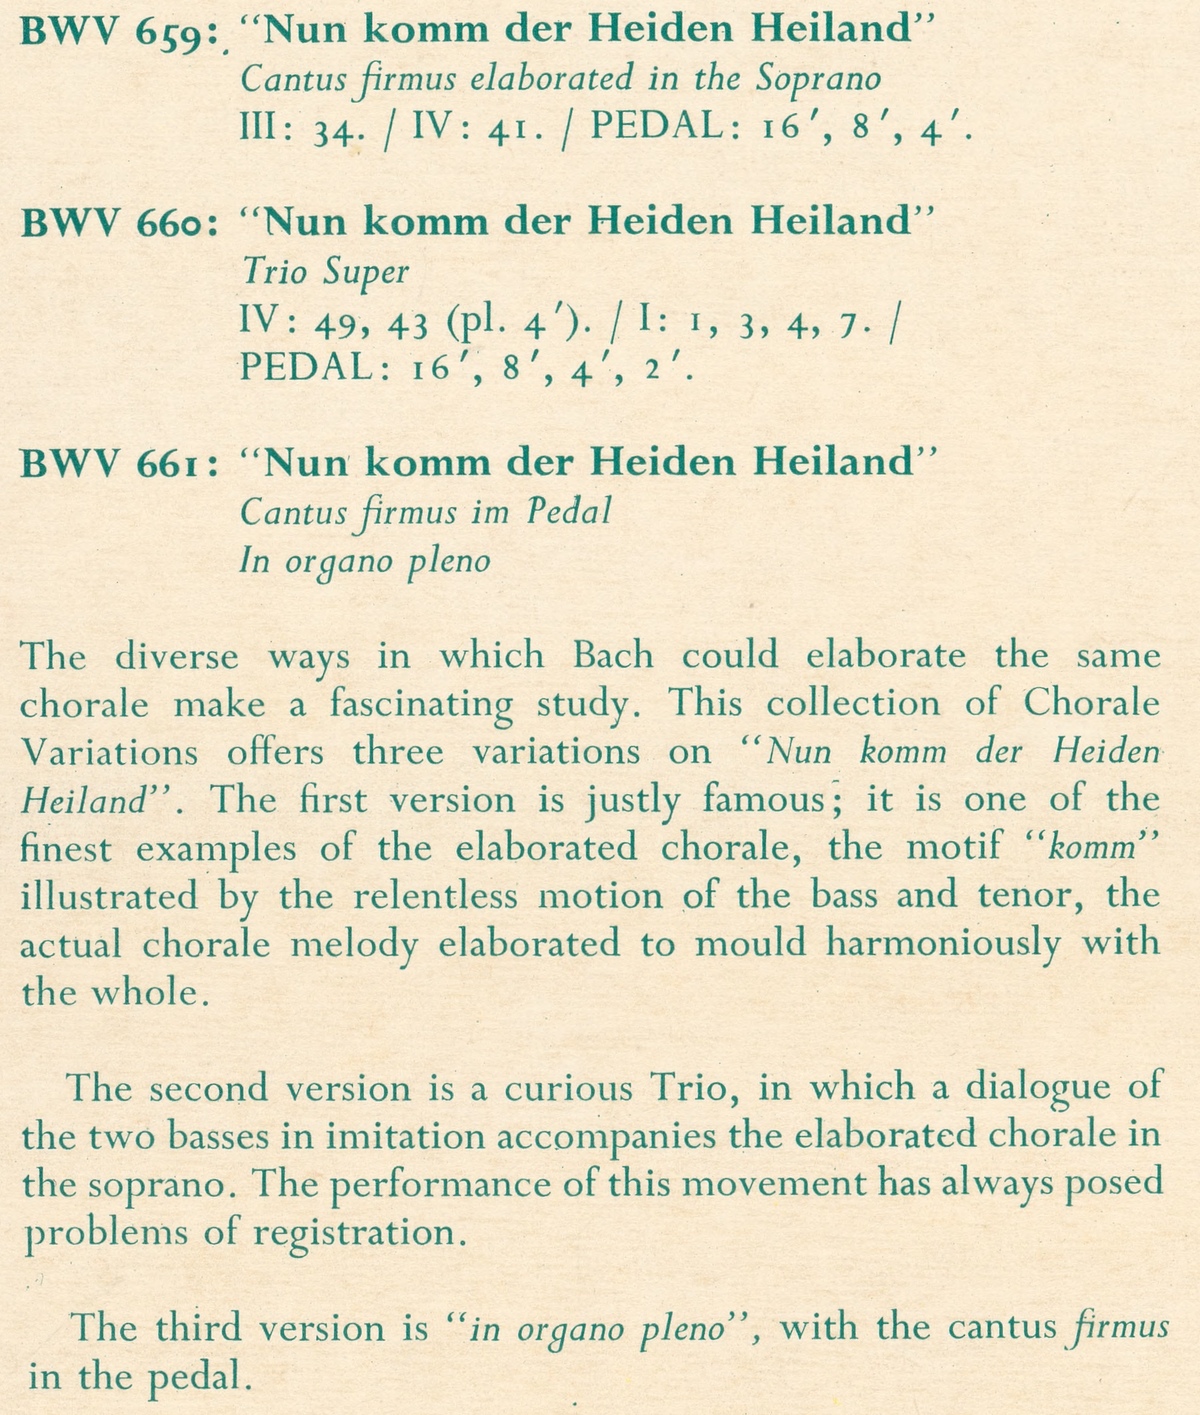 Extraits des notes publiées au verso de la pochette du disque ORYX BACH 1018